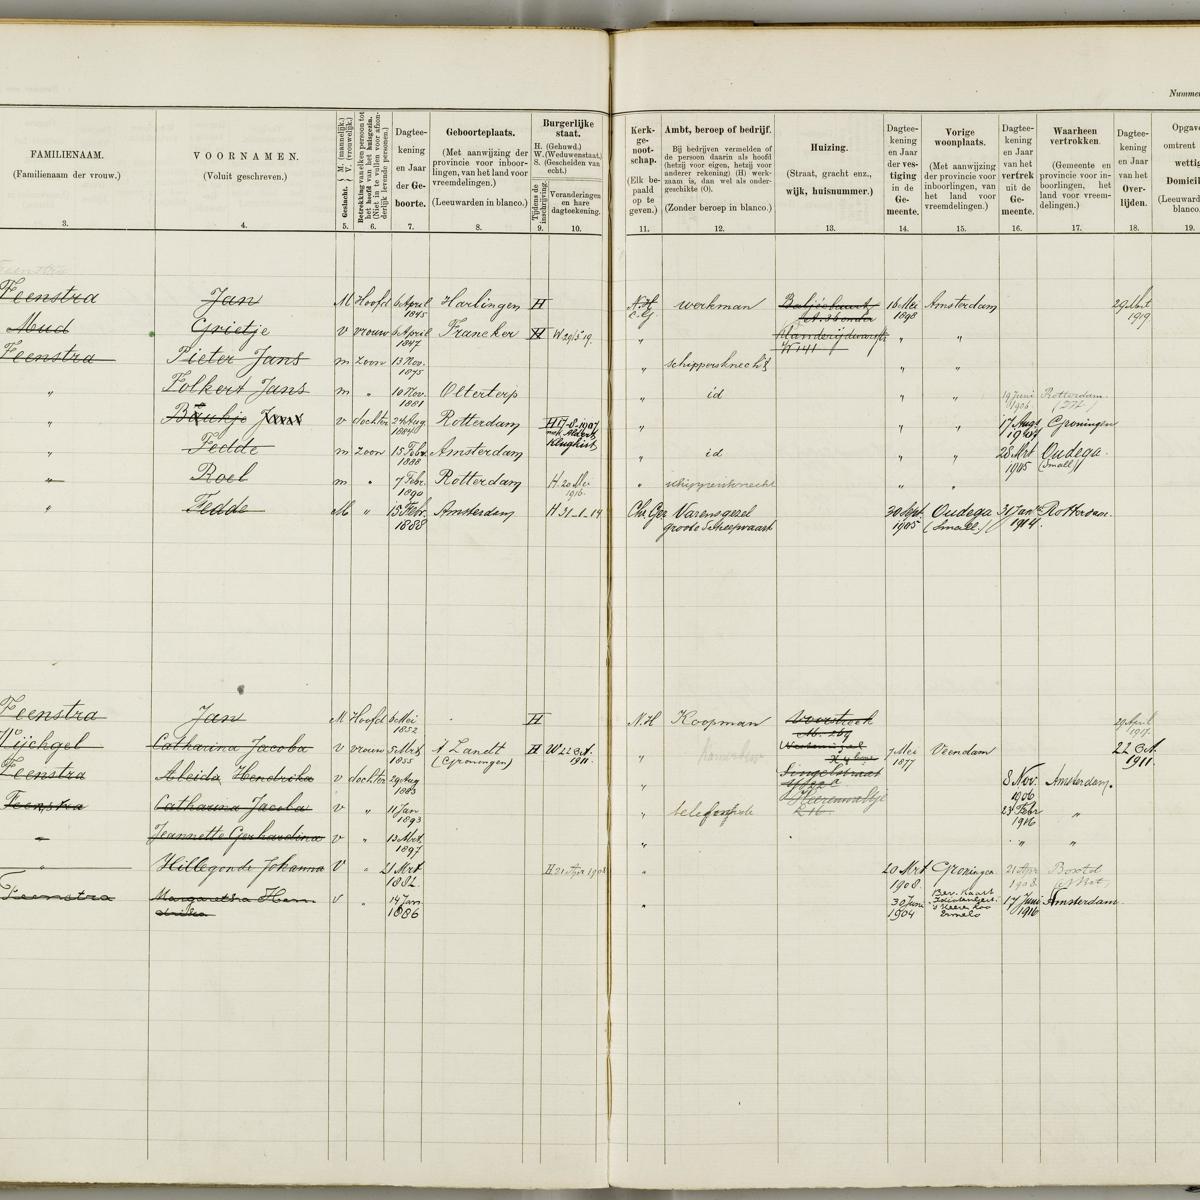 Civil registry, Leeuwarden, 1904-1922, sheet 120